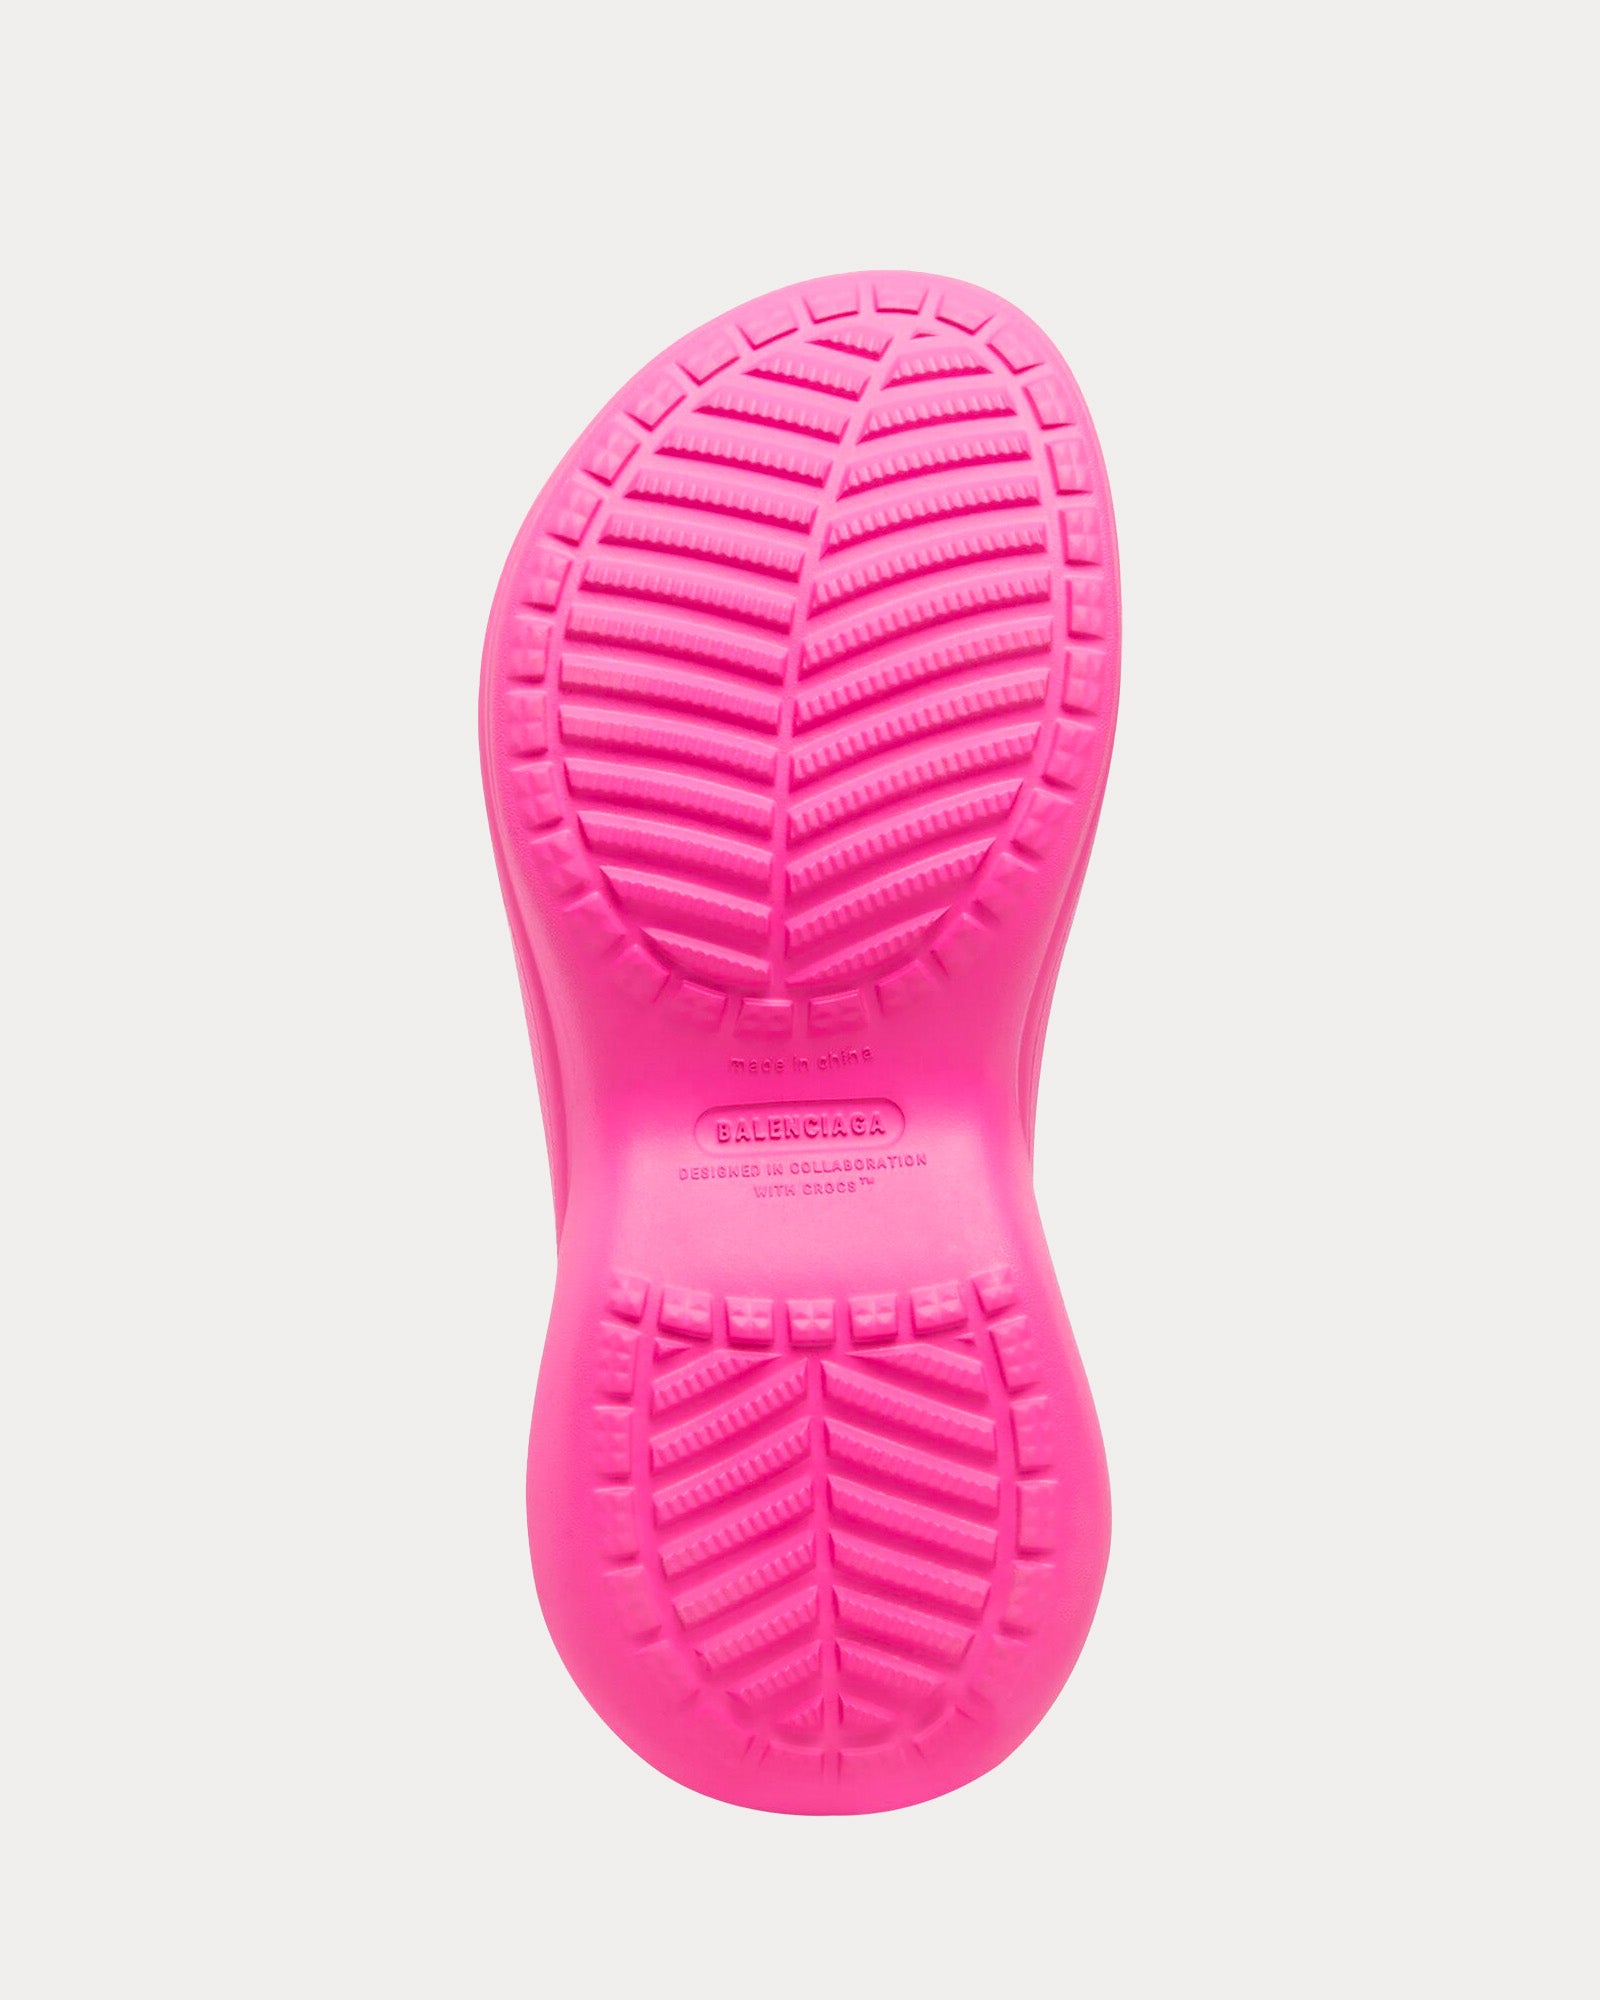 Balenciaga x Crocs - Rubber Bright Pink Boots